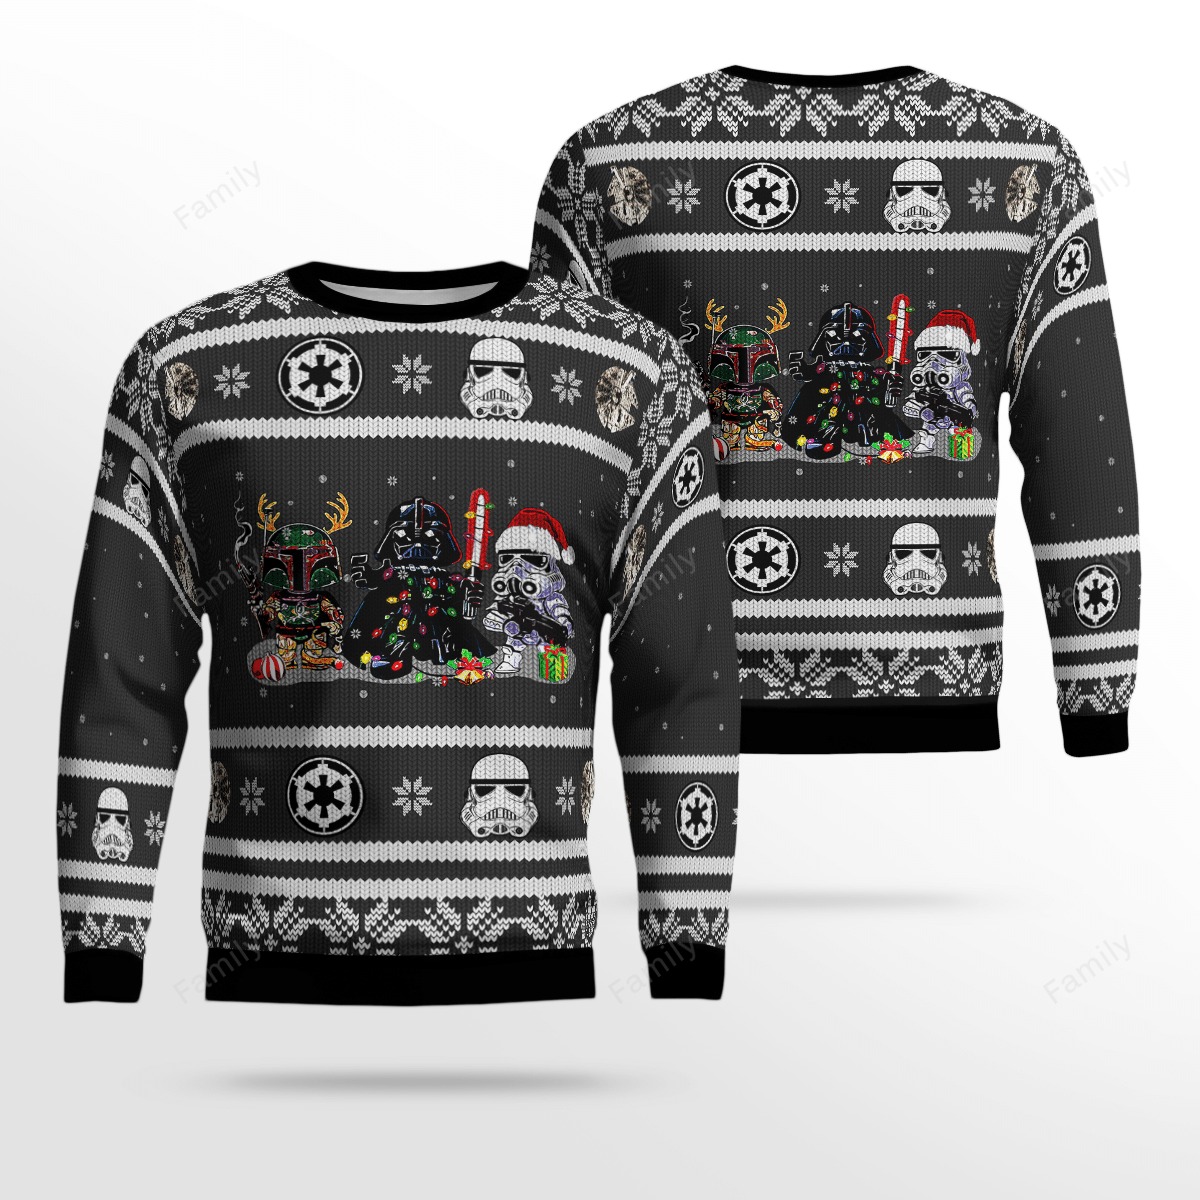 Star Wars Darth Vader Boba Fett christmas sweater